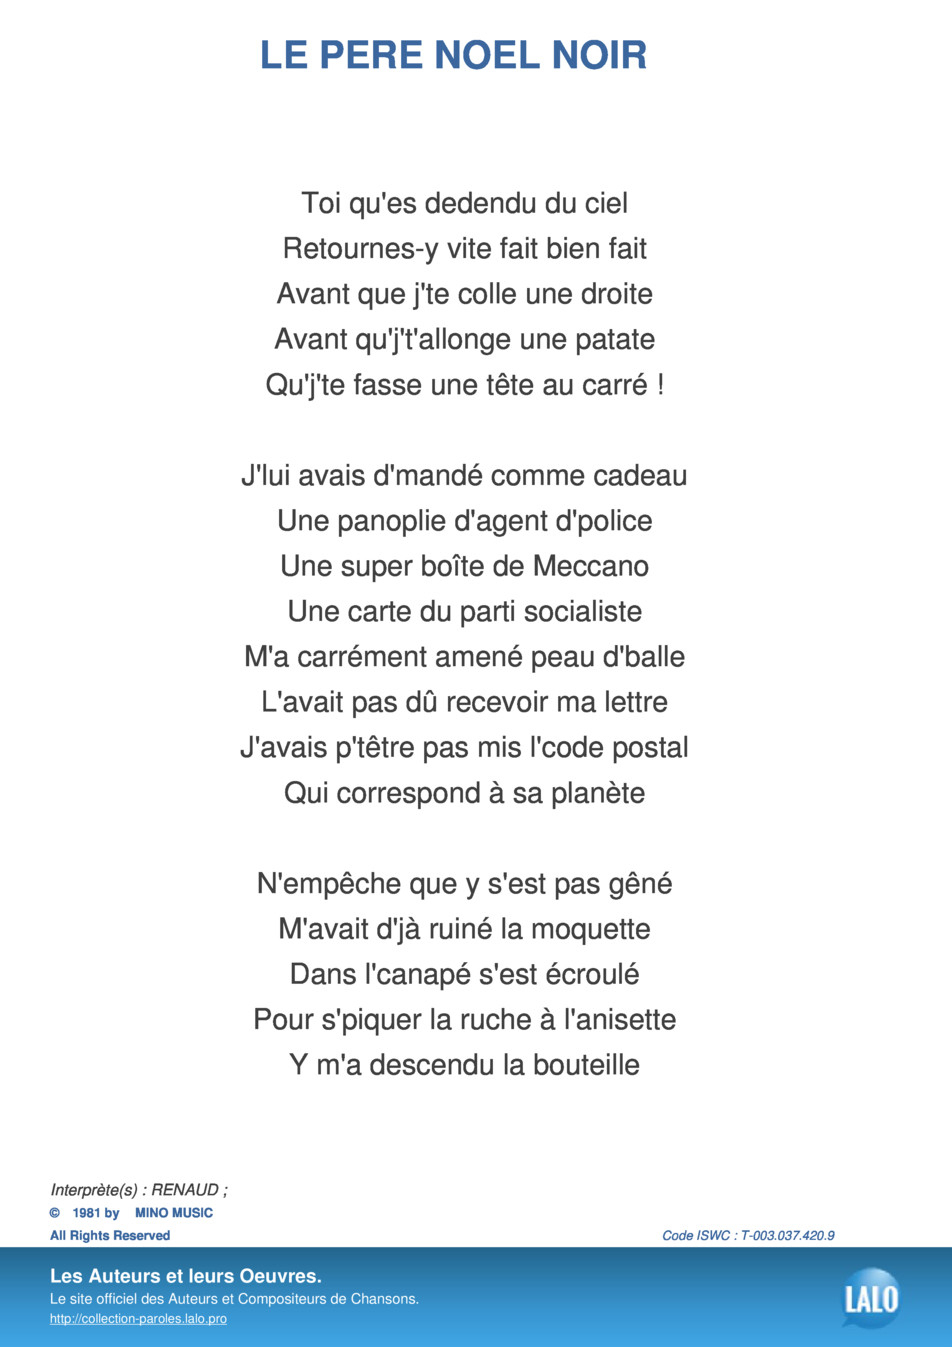 Paroles Et Musique De Le Pere Noel Noir Renaud - Lalo.pro concernant Chanson De La Patate